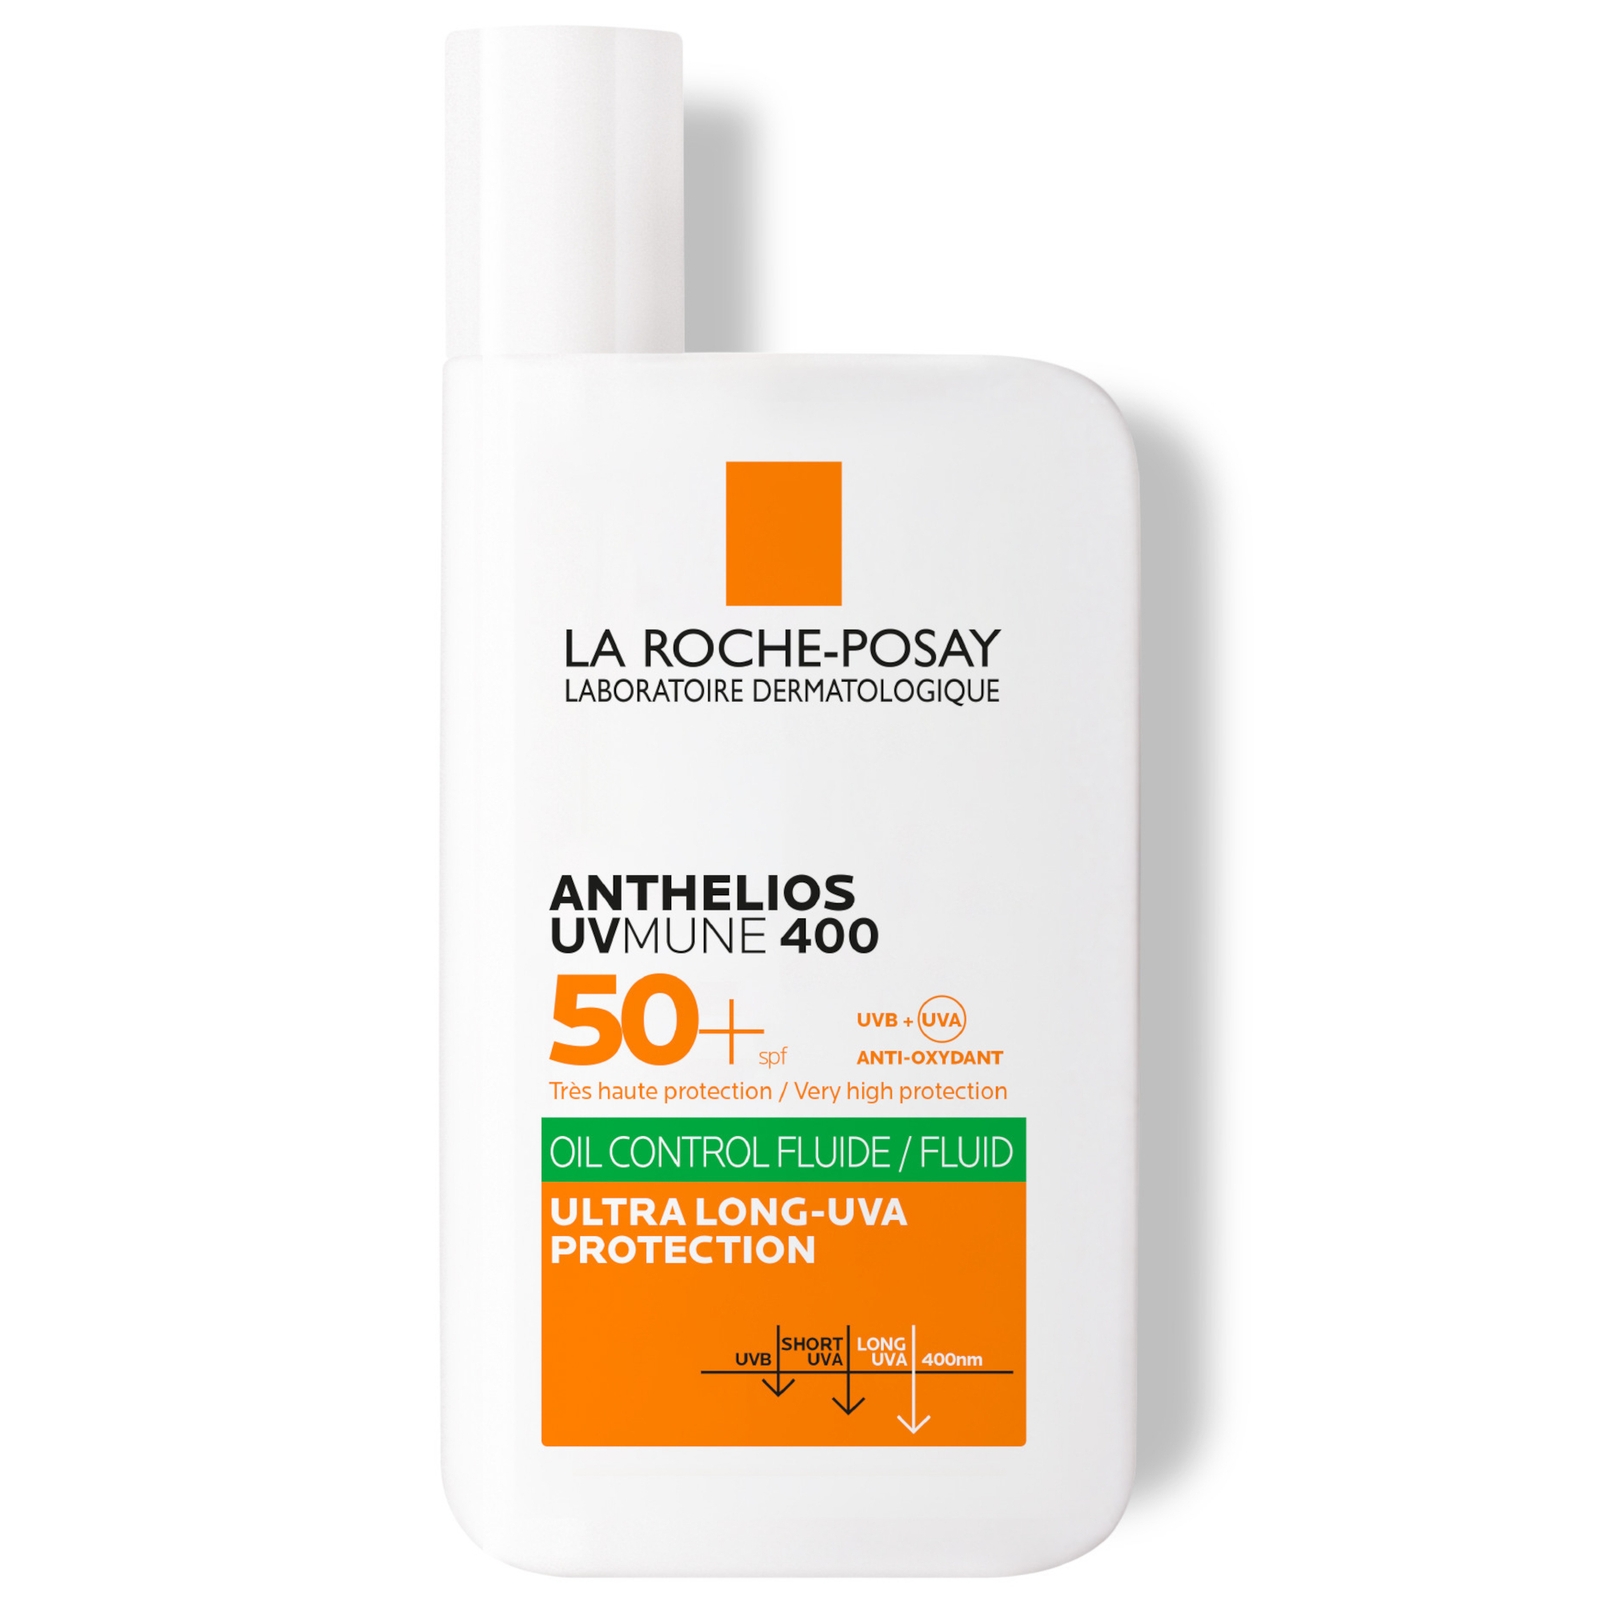 Photos - Sun Skin Care La Roche Posay La Roche-Posay Anthelios Oil Control Fluid SPF50+ for Oily Blemish-Prone S 